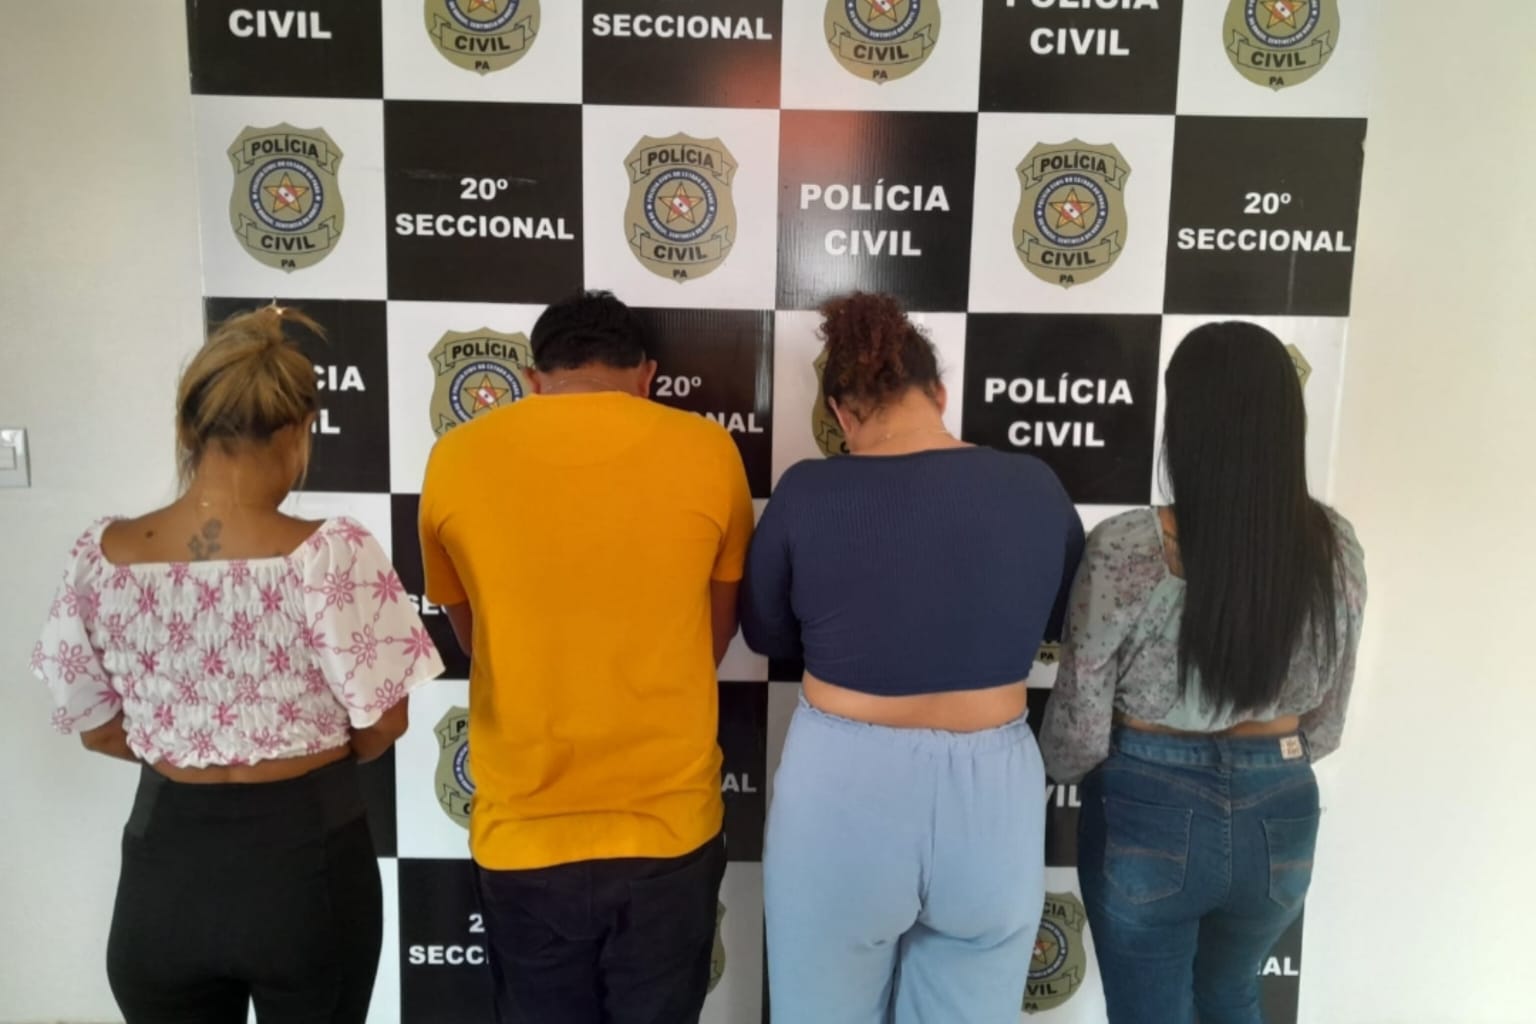 Quarteto é preso por furto qualificado em Parauapebas